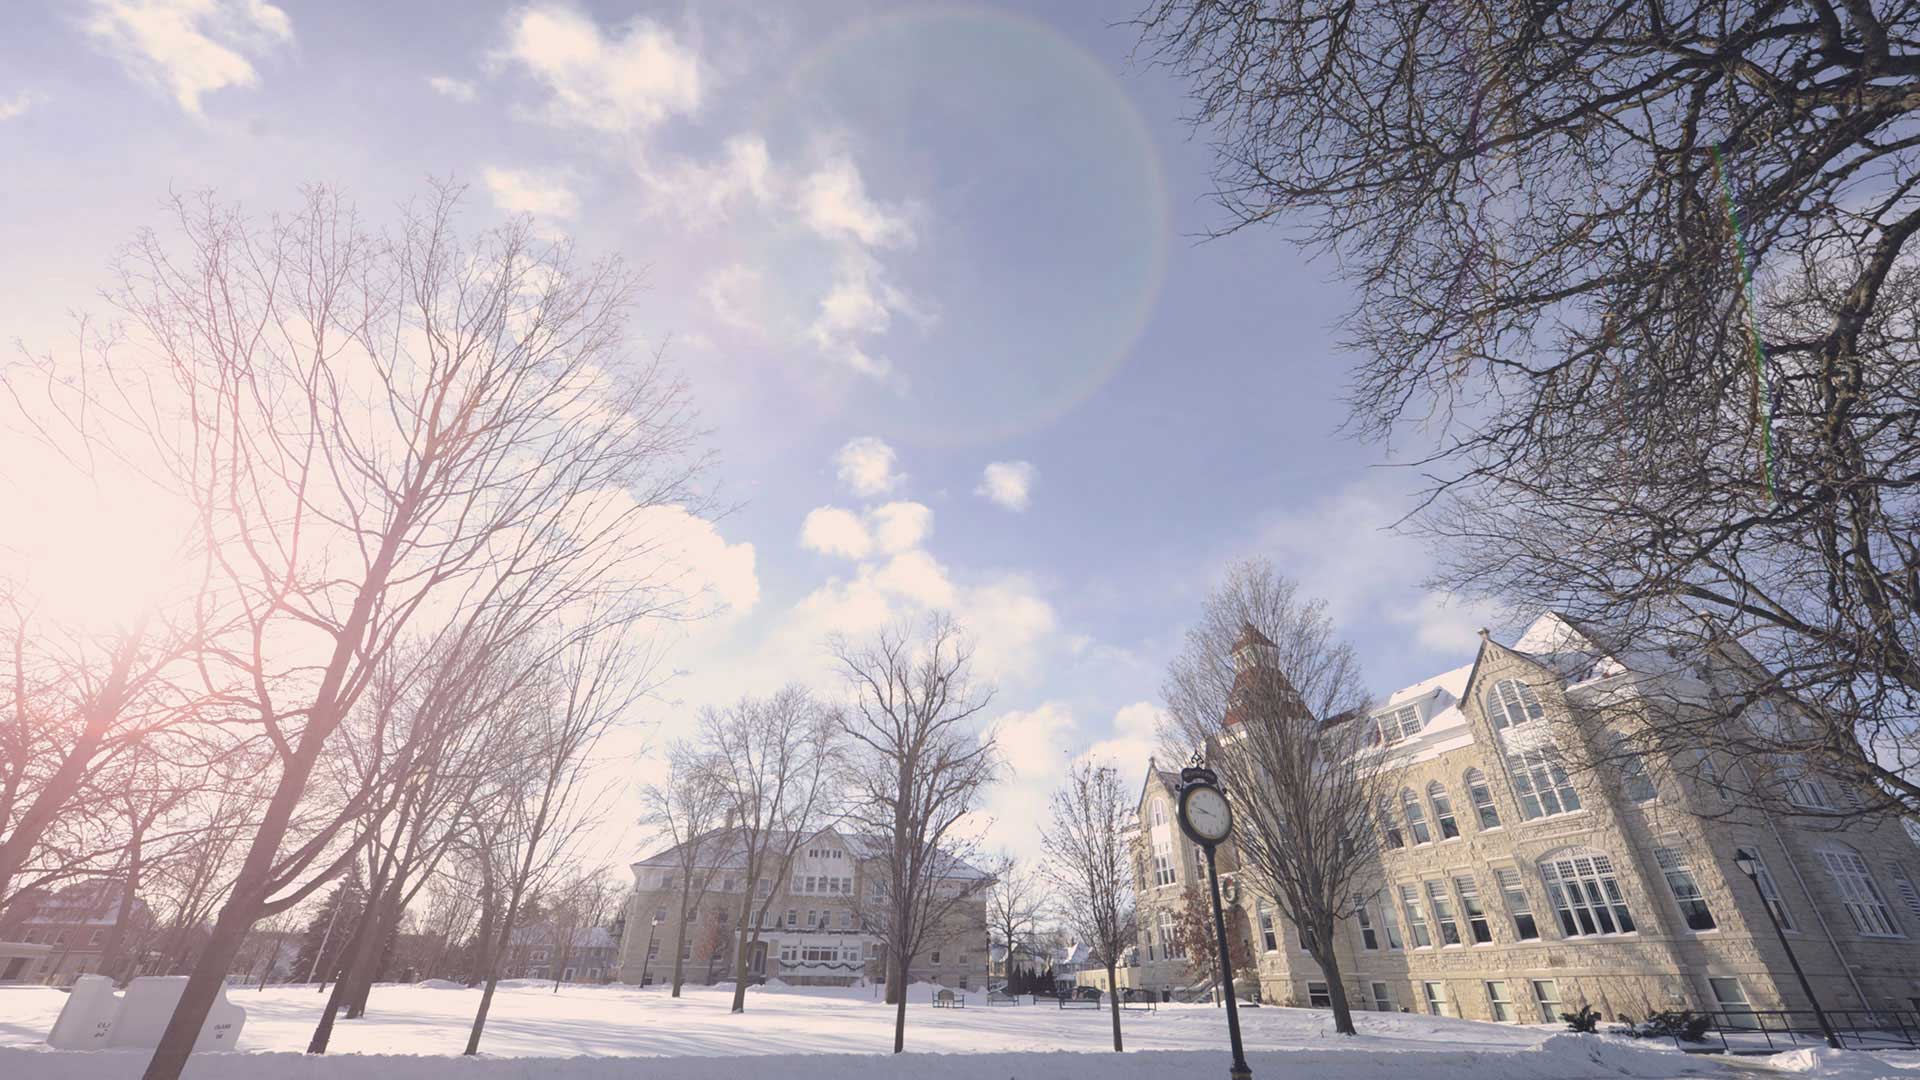 Carroll University's Main Lawn in winter